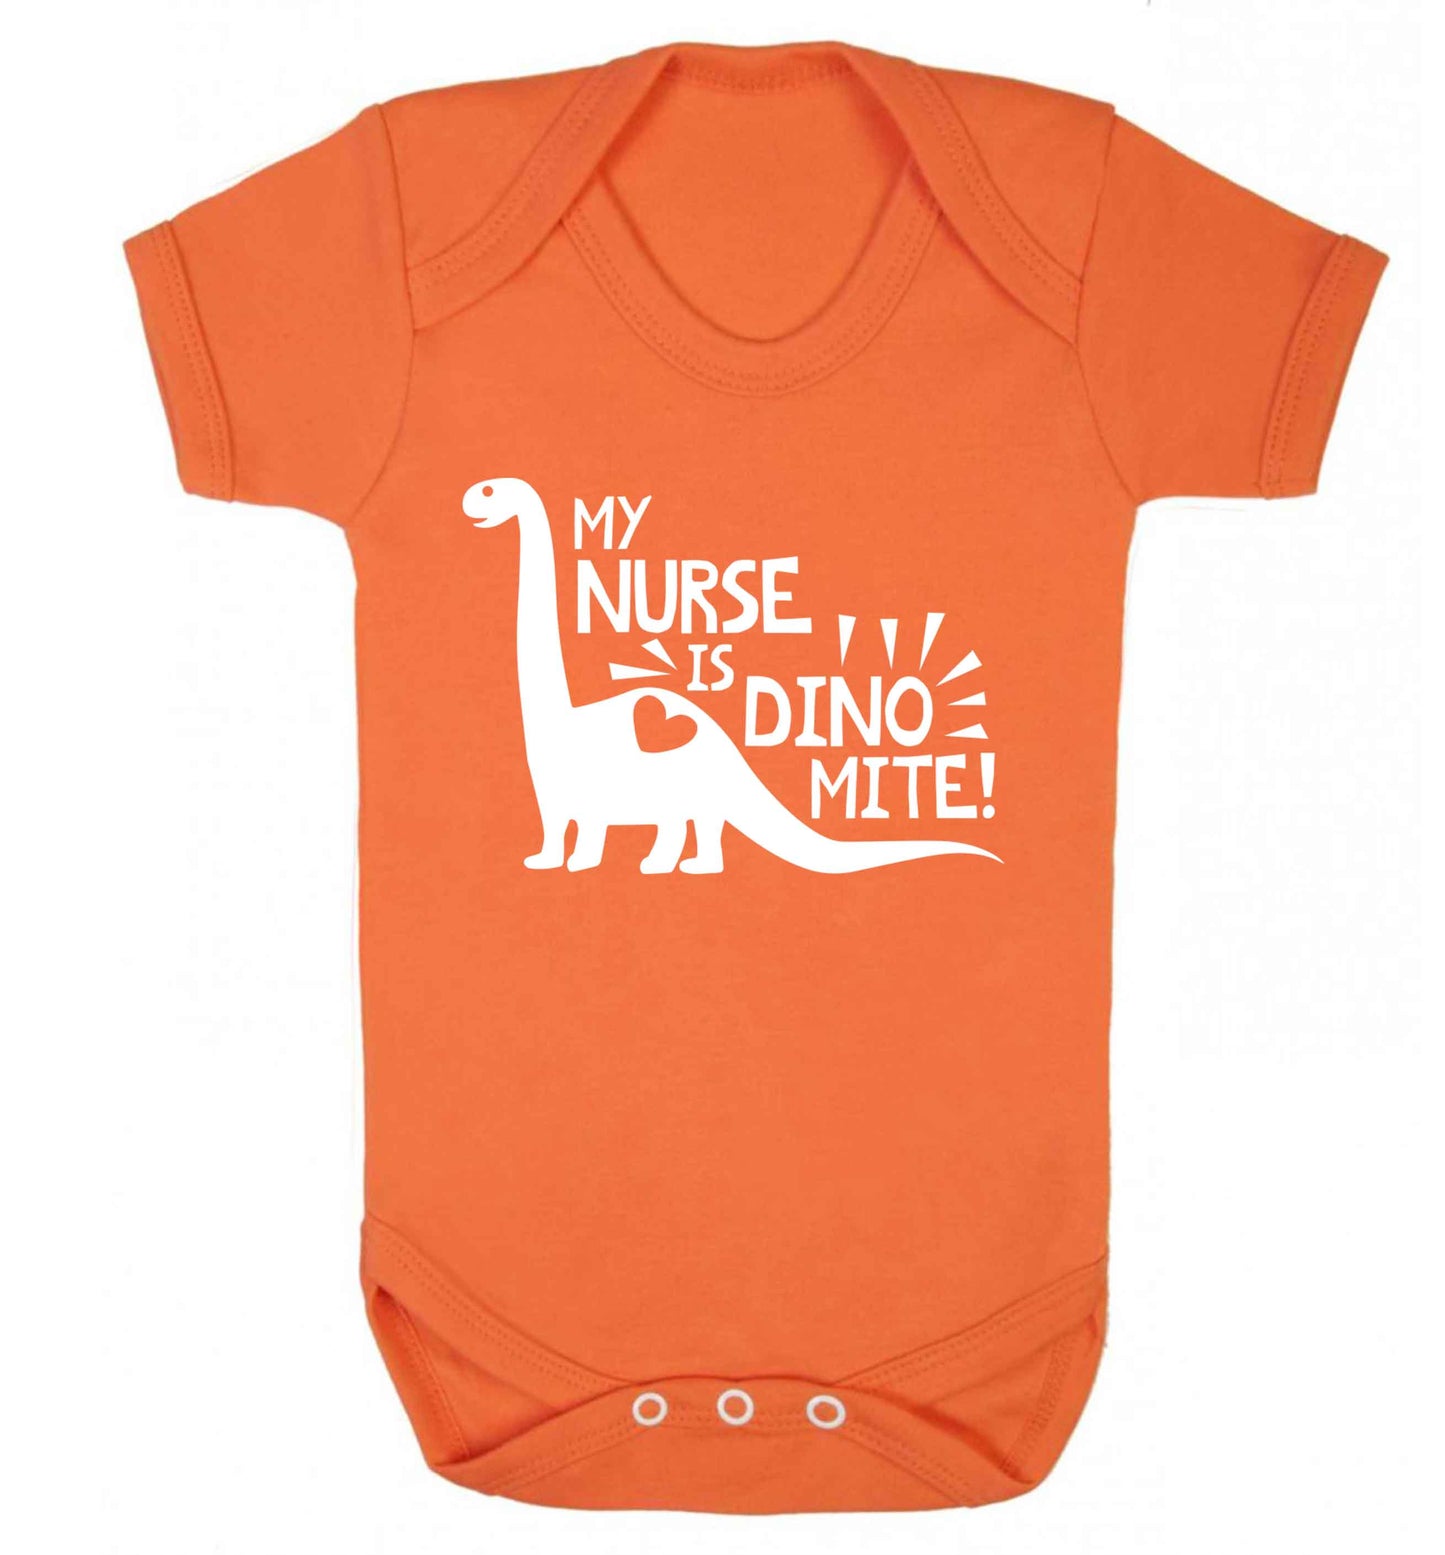 My nurse is dinomite! Baby Vest orange 18-24 months